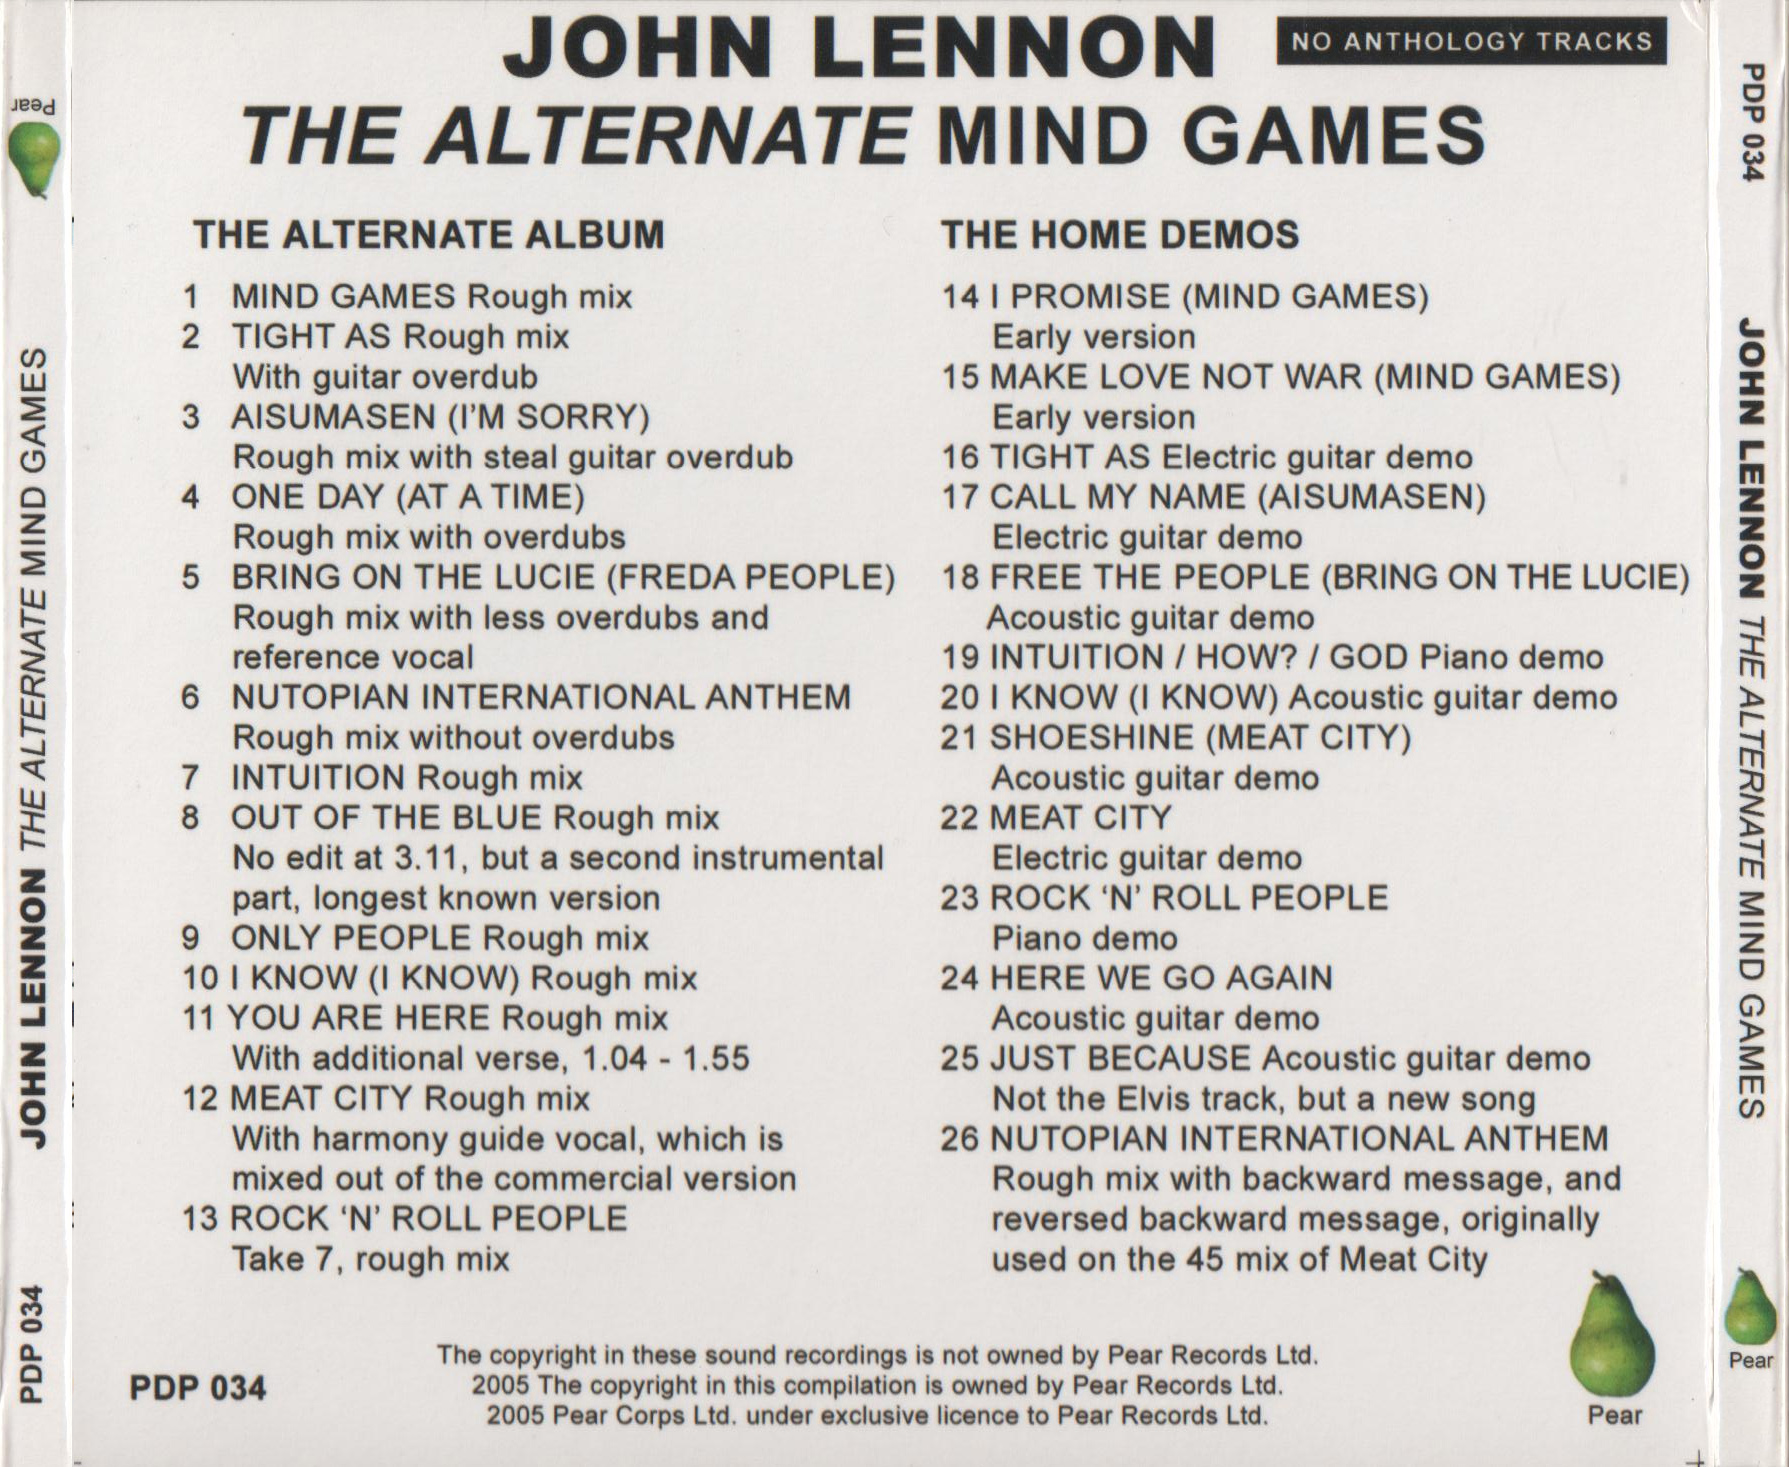 JohnLennon-AlternateMindGames (8).jpg